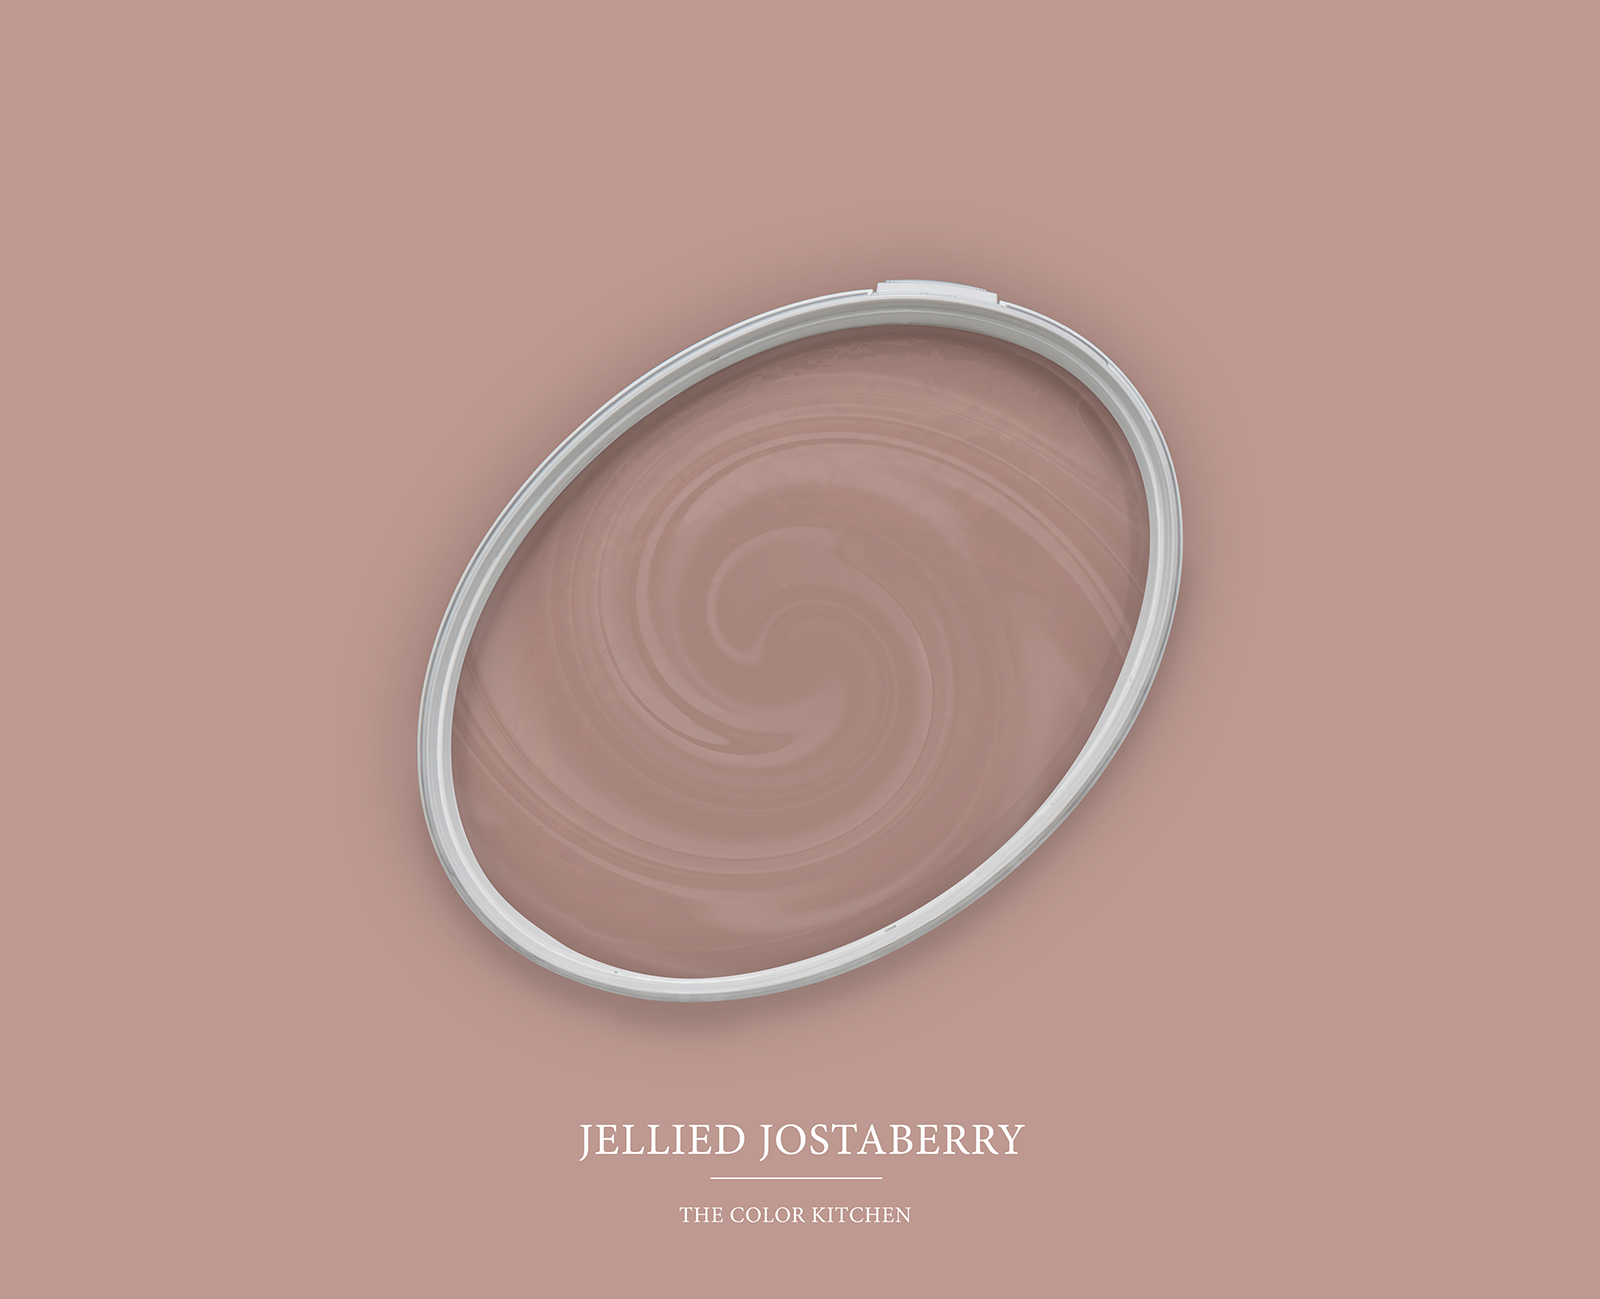         Wandfarbe in rötlichem Beige »Jellied Jostaberry« TCK7002 – 2,5 Liter
    